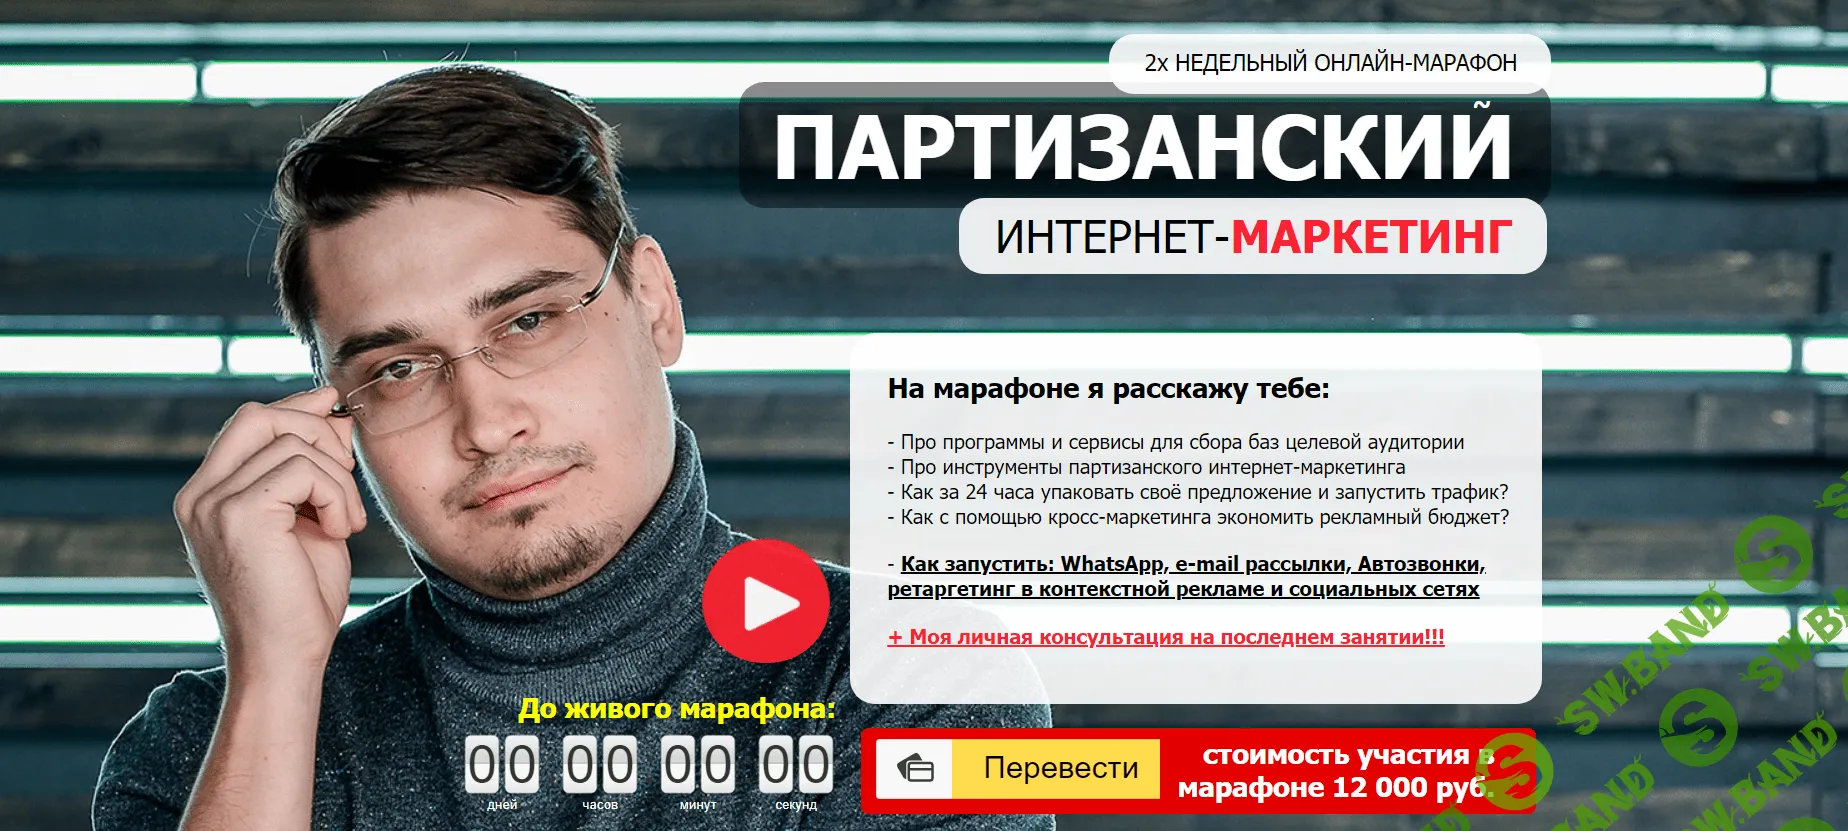 [Никита Алексеев] Партизанский интернет-маркетинг (2020)